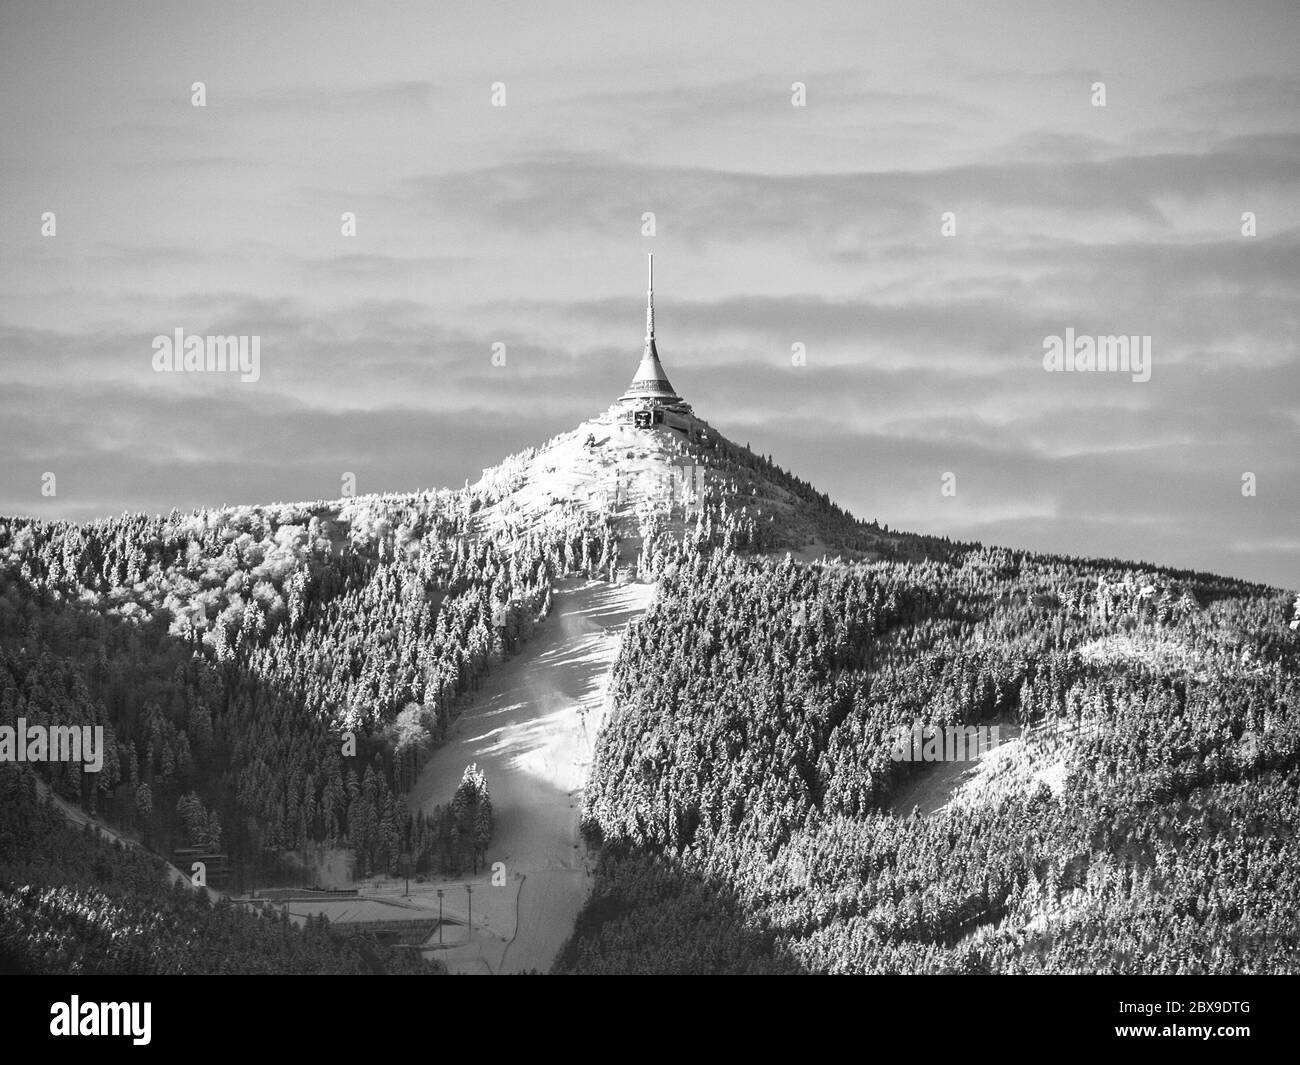 Morgenaufgangszeiten am Jested Mountain und Jested Ski Resort. Winterstimmung. Liberec, Tschechische Republik. Schwarzweiß-Bild. Stockfoto